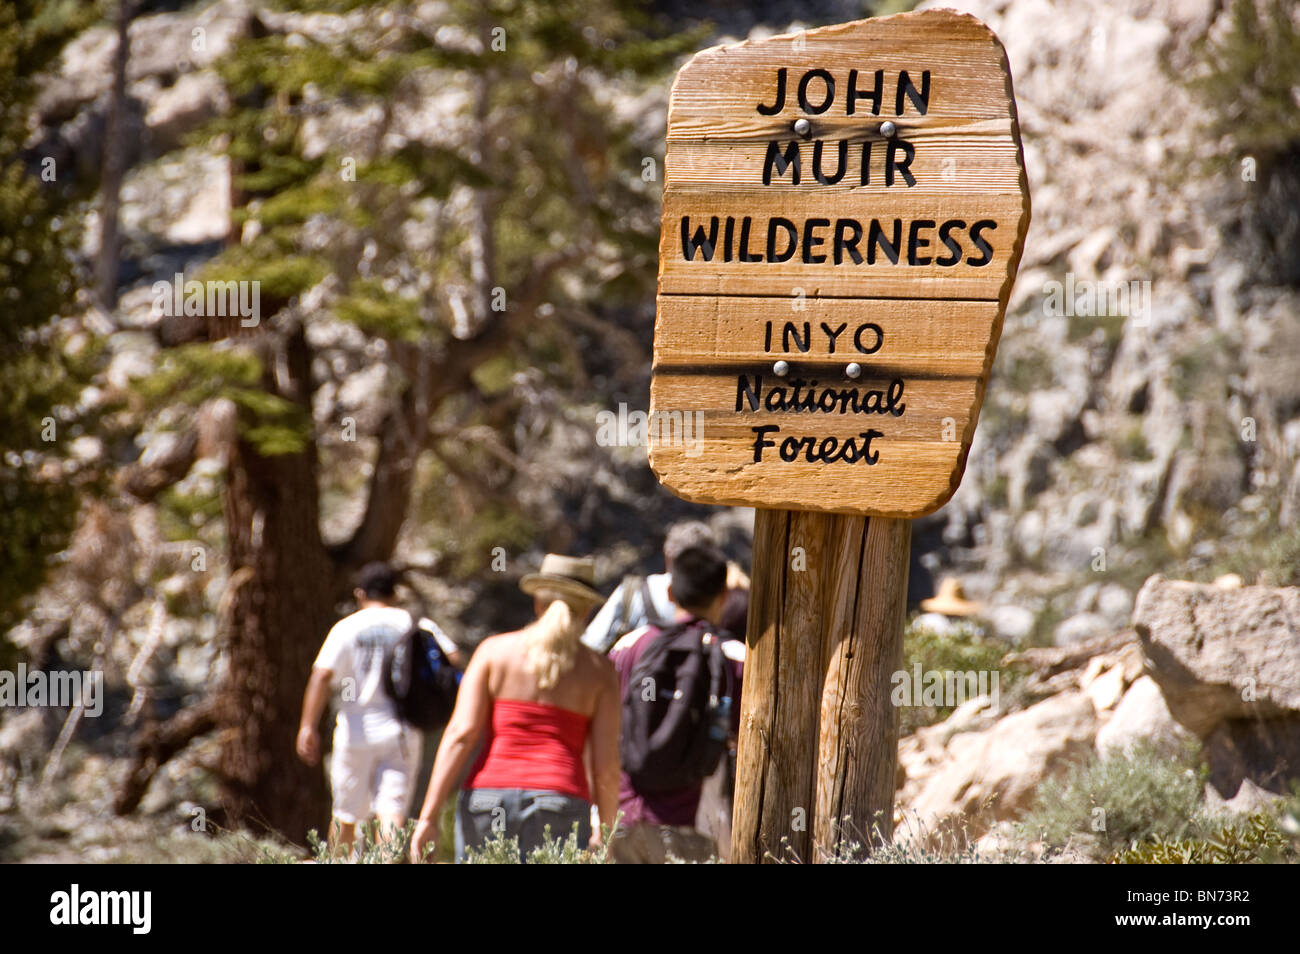 Randonneurs sur le John Muir Wilderness trail, Inyo National Forest Banque D'Images